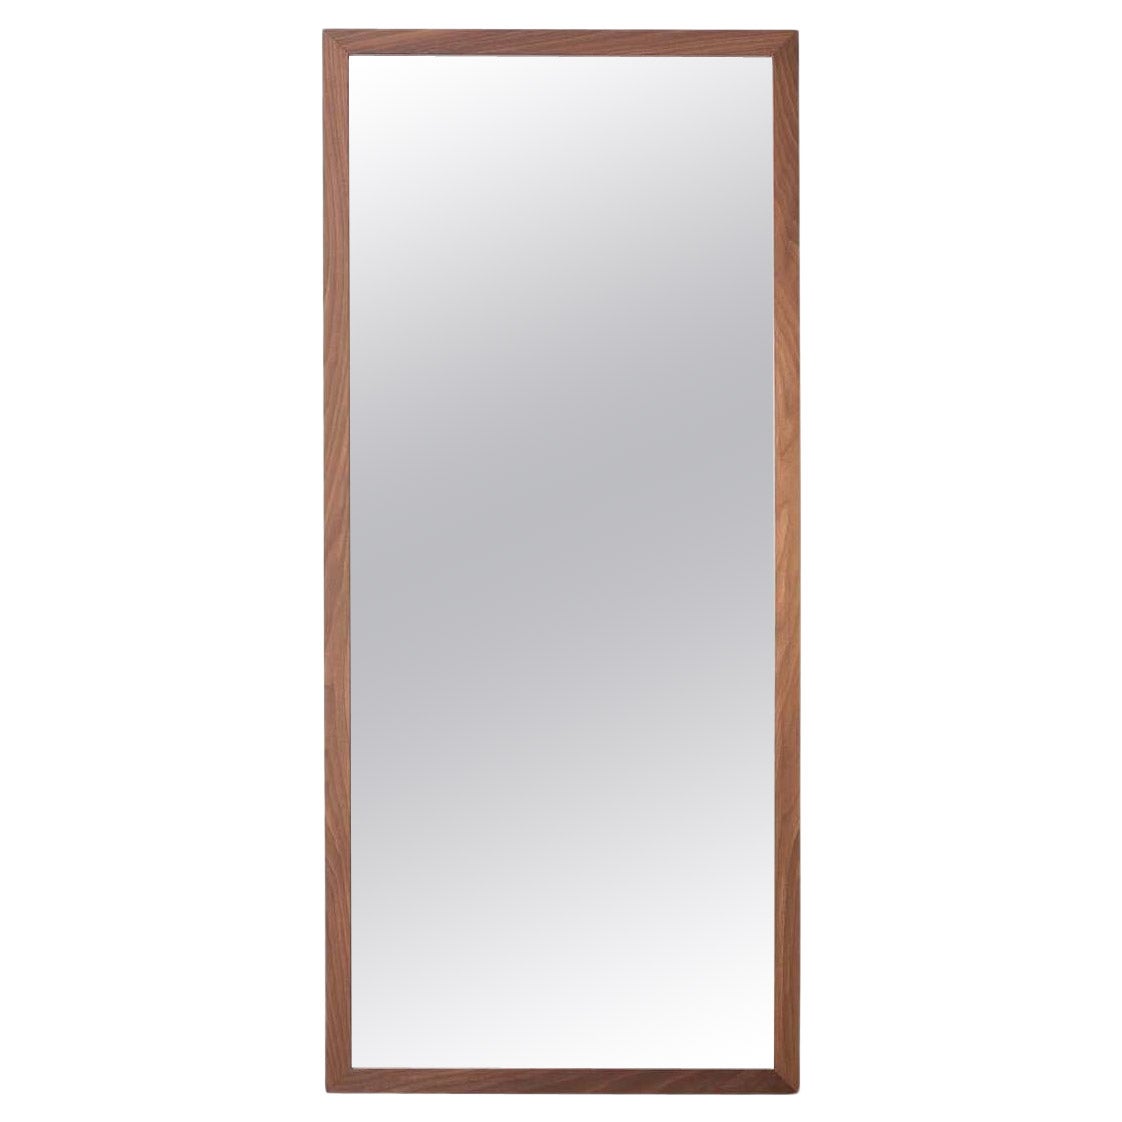 Specchio Rettangolare 2018, miroir rectangulaire 2018